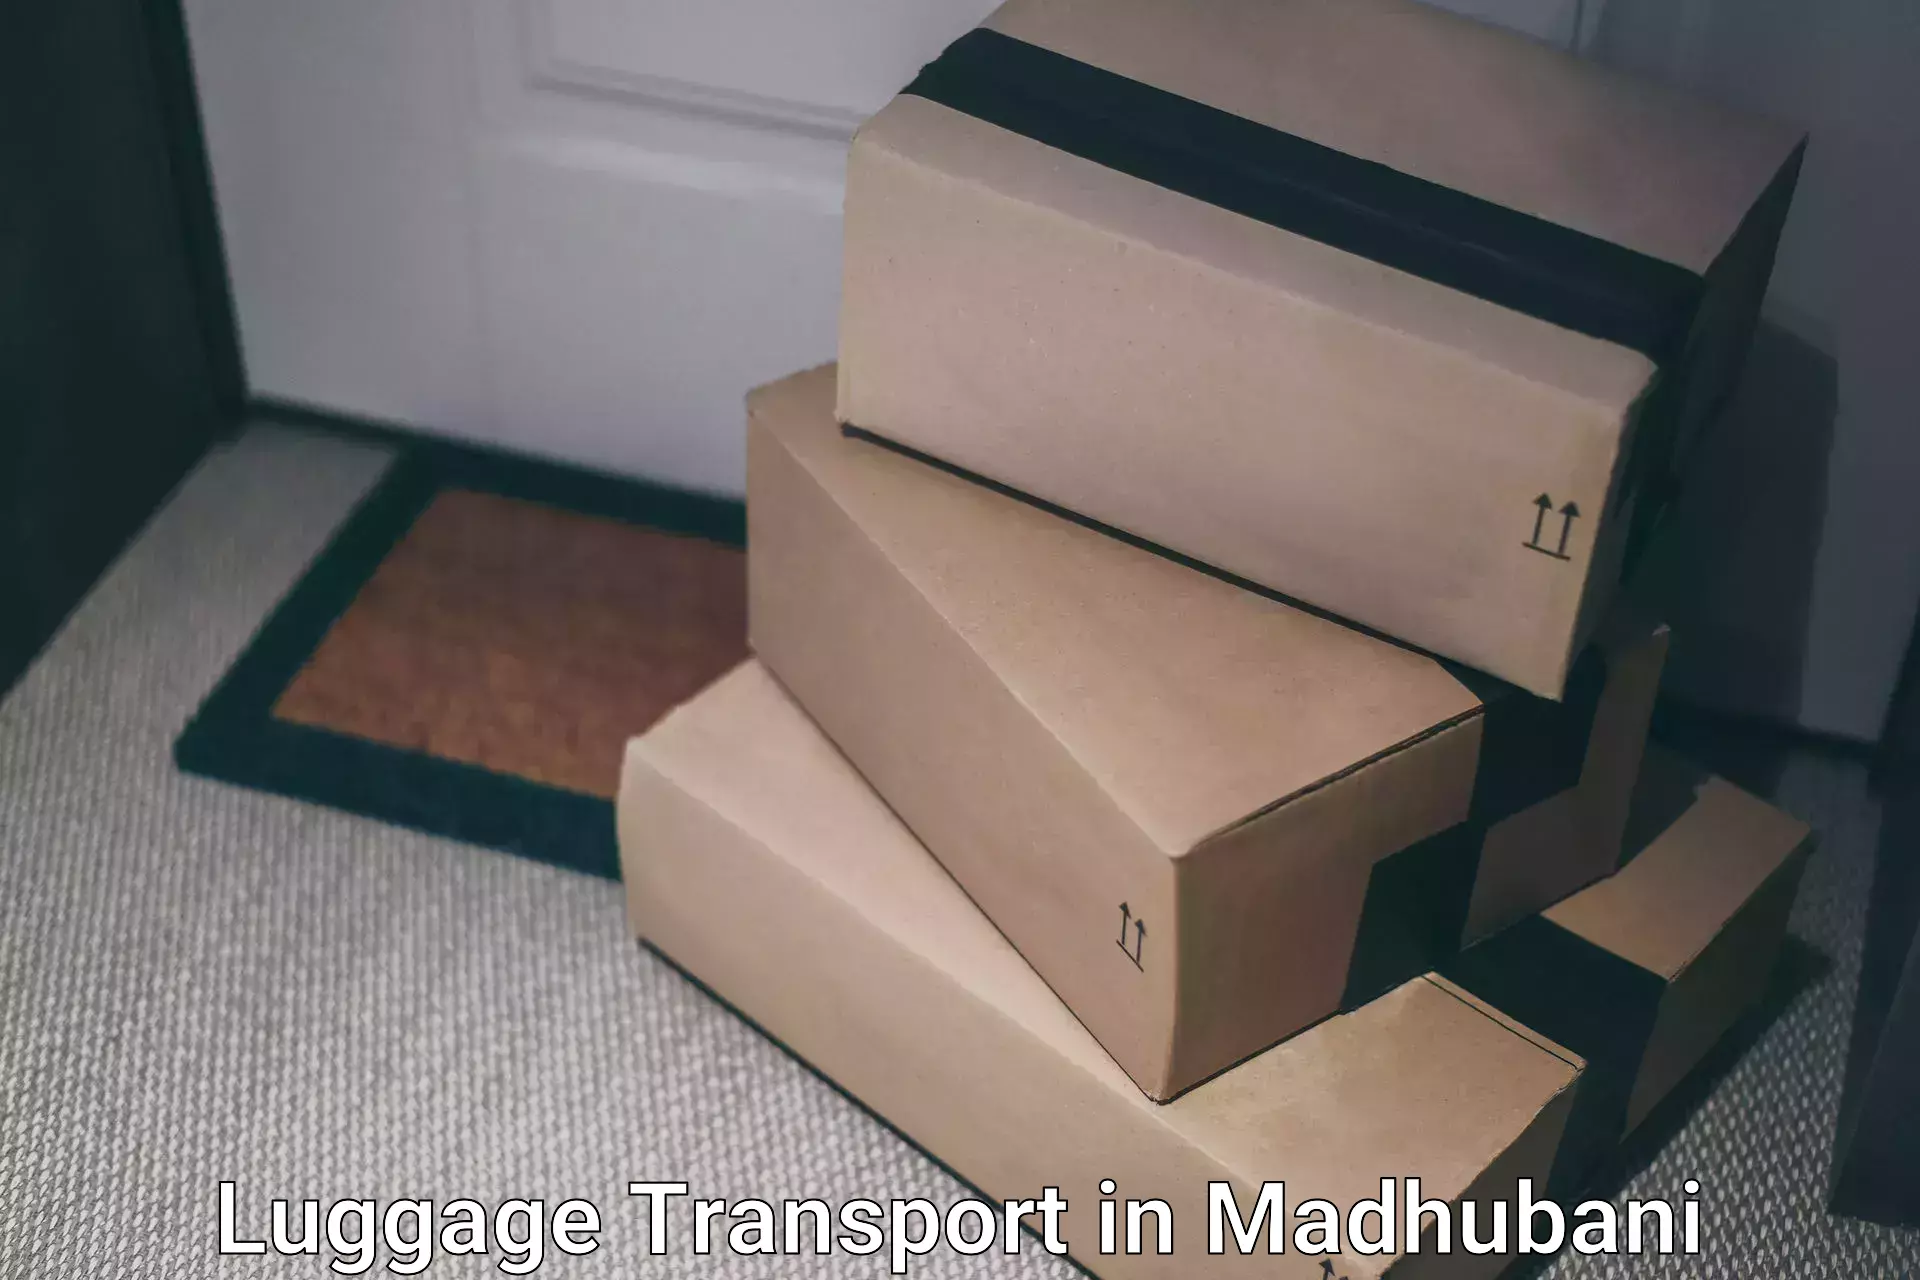 Luggage delivery logistics in Madhubani